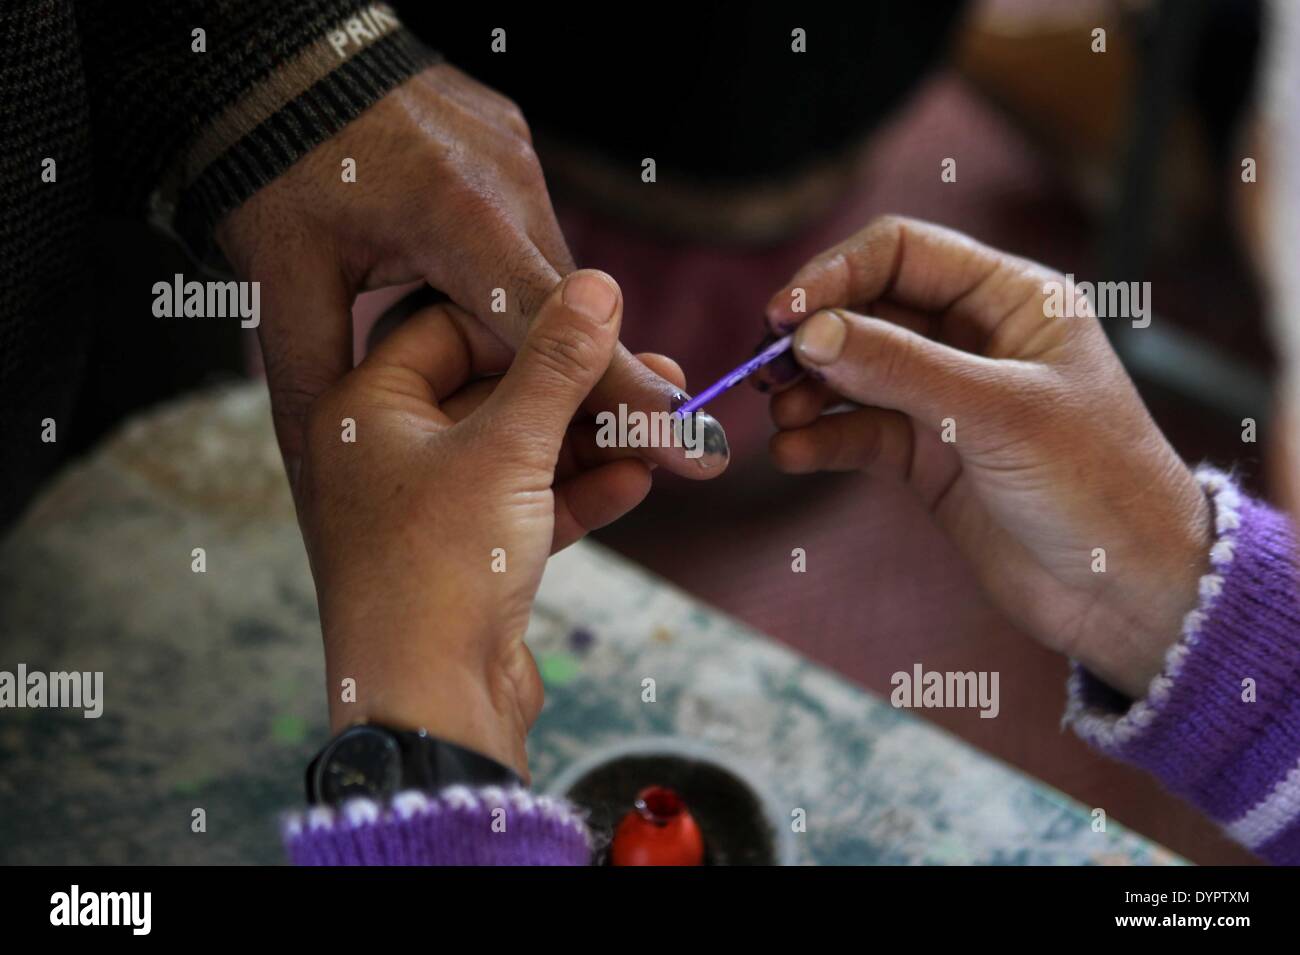 Srinagar, Indiano-controllato del Kashmir. 24 apr 2014. Un funzionario di polling segna un dito di elettore al seggio vicino a Srinagar, la capitale estiva di Indiano-Kashmir controllata, 24 aprile 2014. Credito: Javed Dar/Xinhua/Alamy Live News Foto Stock